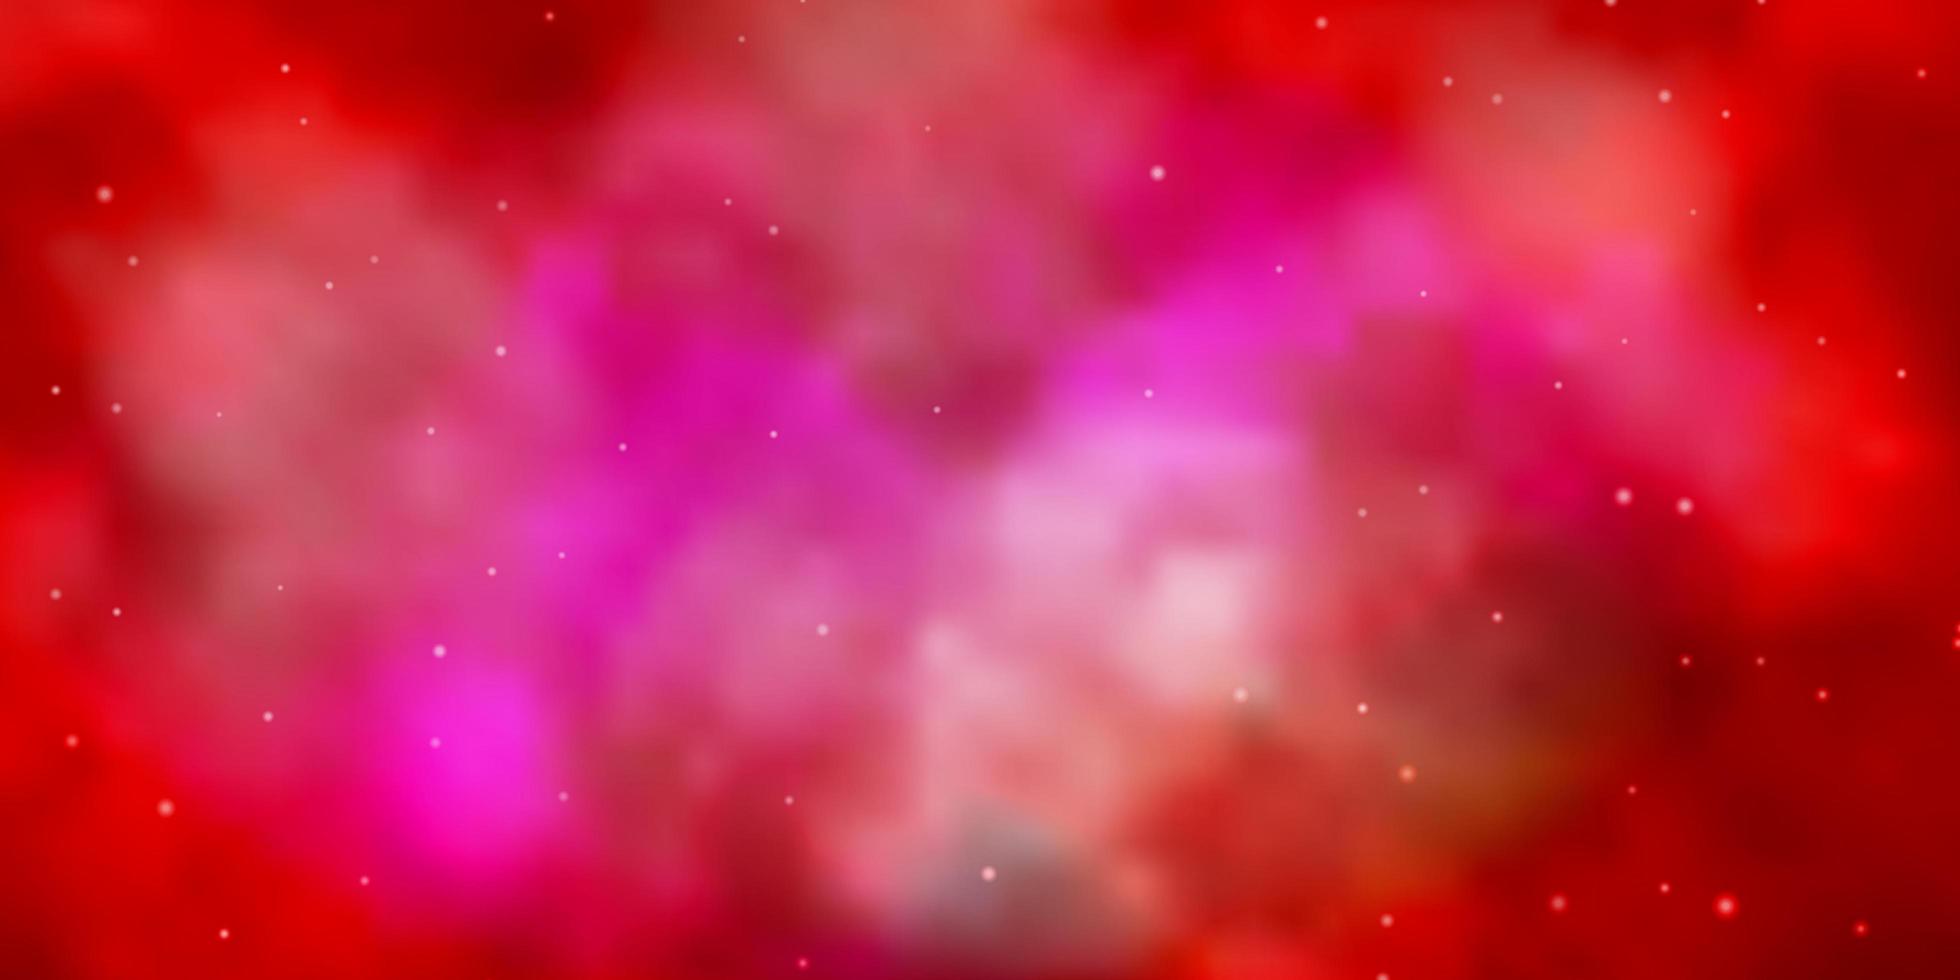 fond de vecteur rouge clair avec des étoiles colorées.